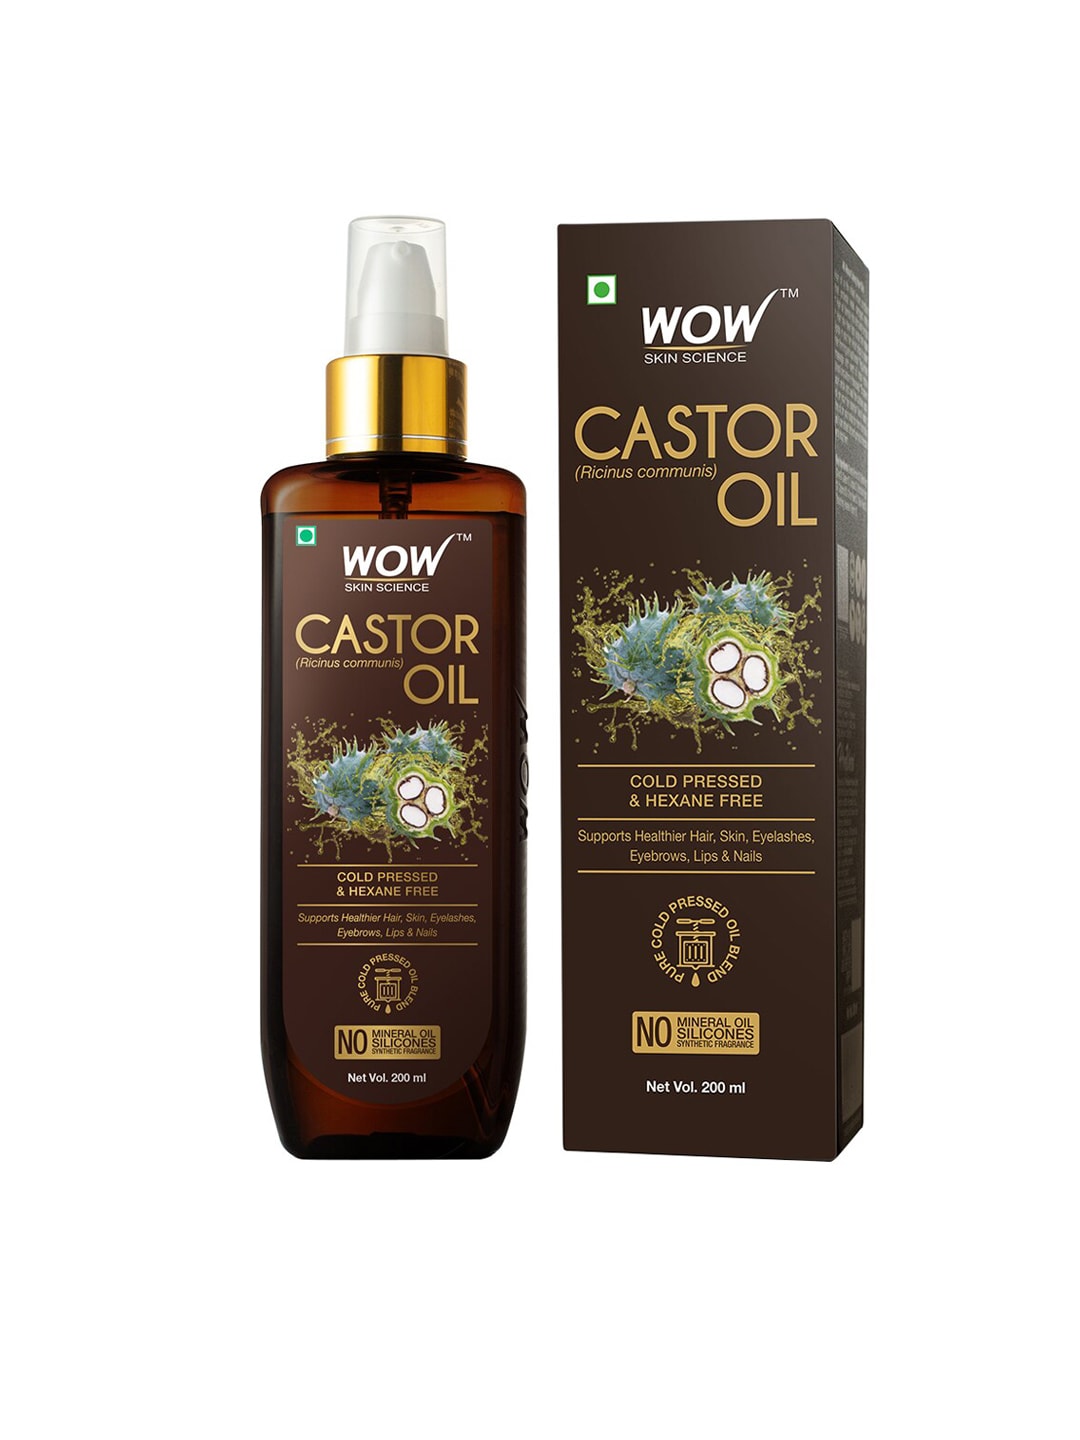 WOW Skin Science Castor Oil 200 ml Price in India